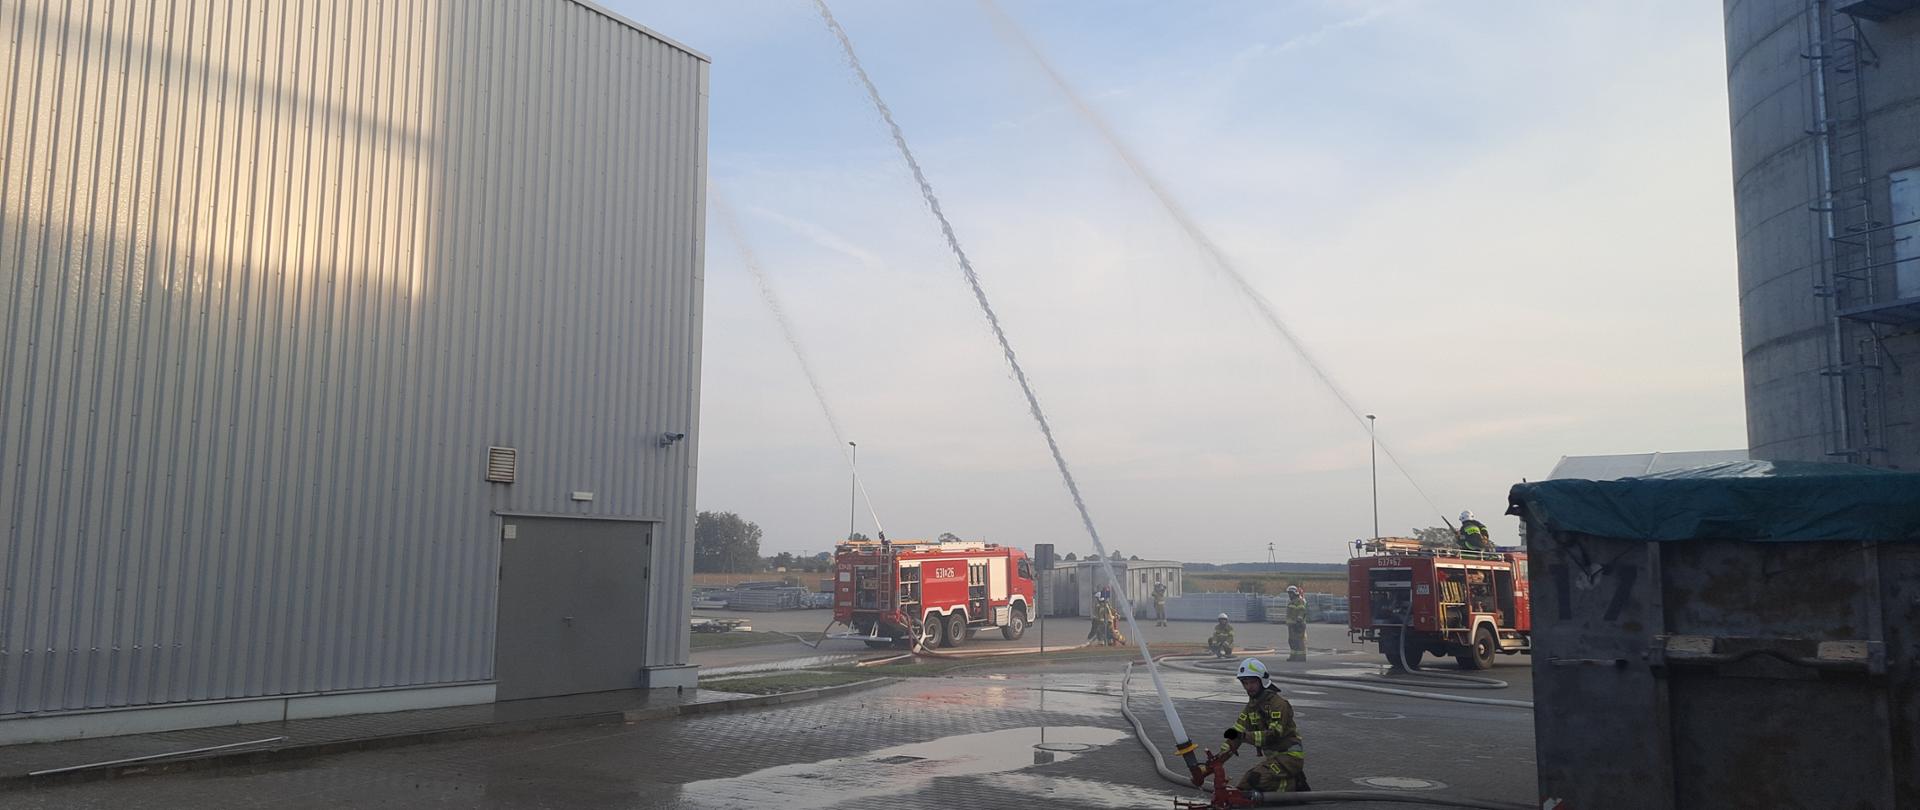 Na zdjęciu widać strażaków podających wodę z działek przenośnych oraz wozy strażackie 